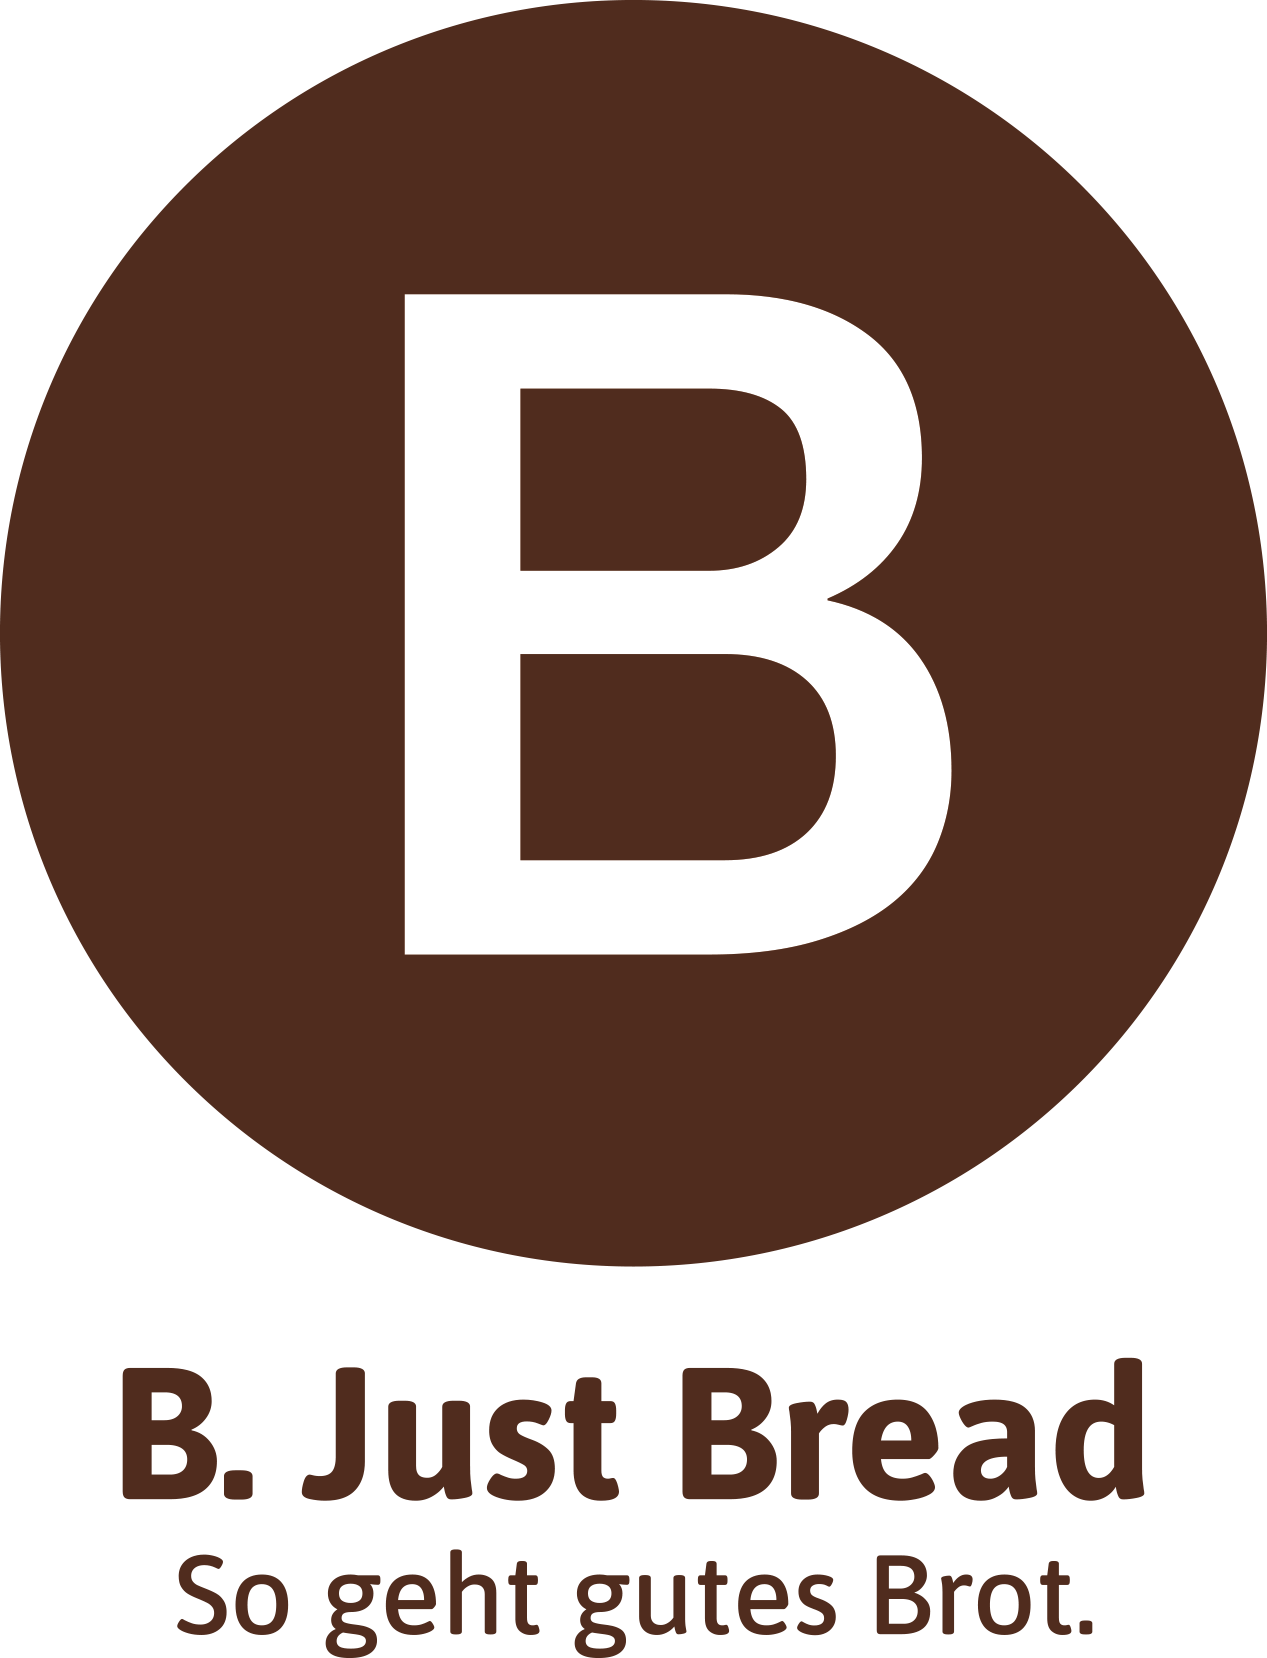 B. Just Bread